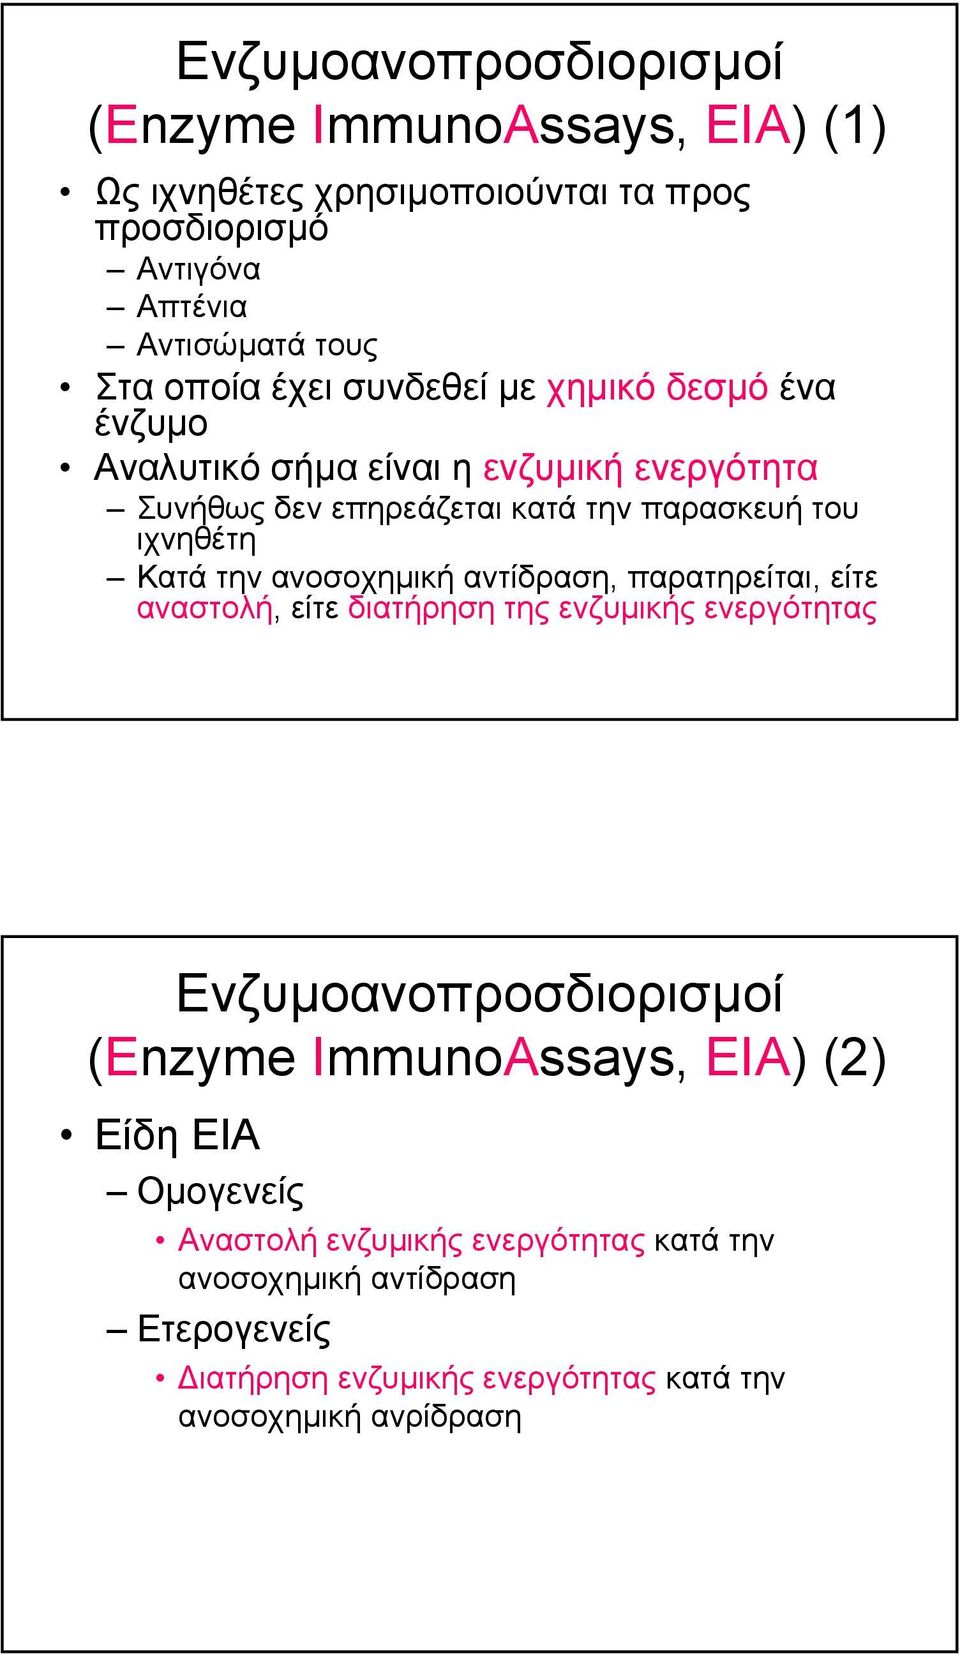 ανοσοχηµική αντίδραση, παρατηρείται, είτε αναστολή, είτε διατήρηση της ενζυµικής ενεργότητας Ενζυµοανοπροσδιορισµοί (Enzyme ImmunoAssays, EIA) (2)